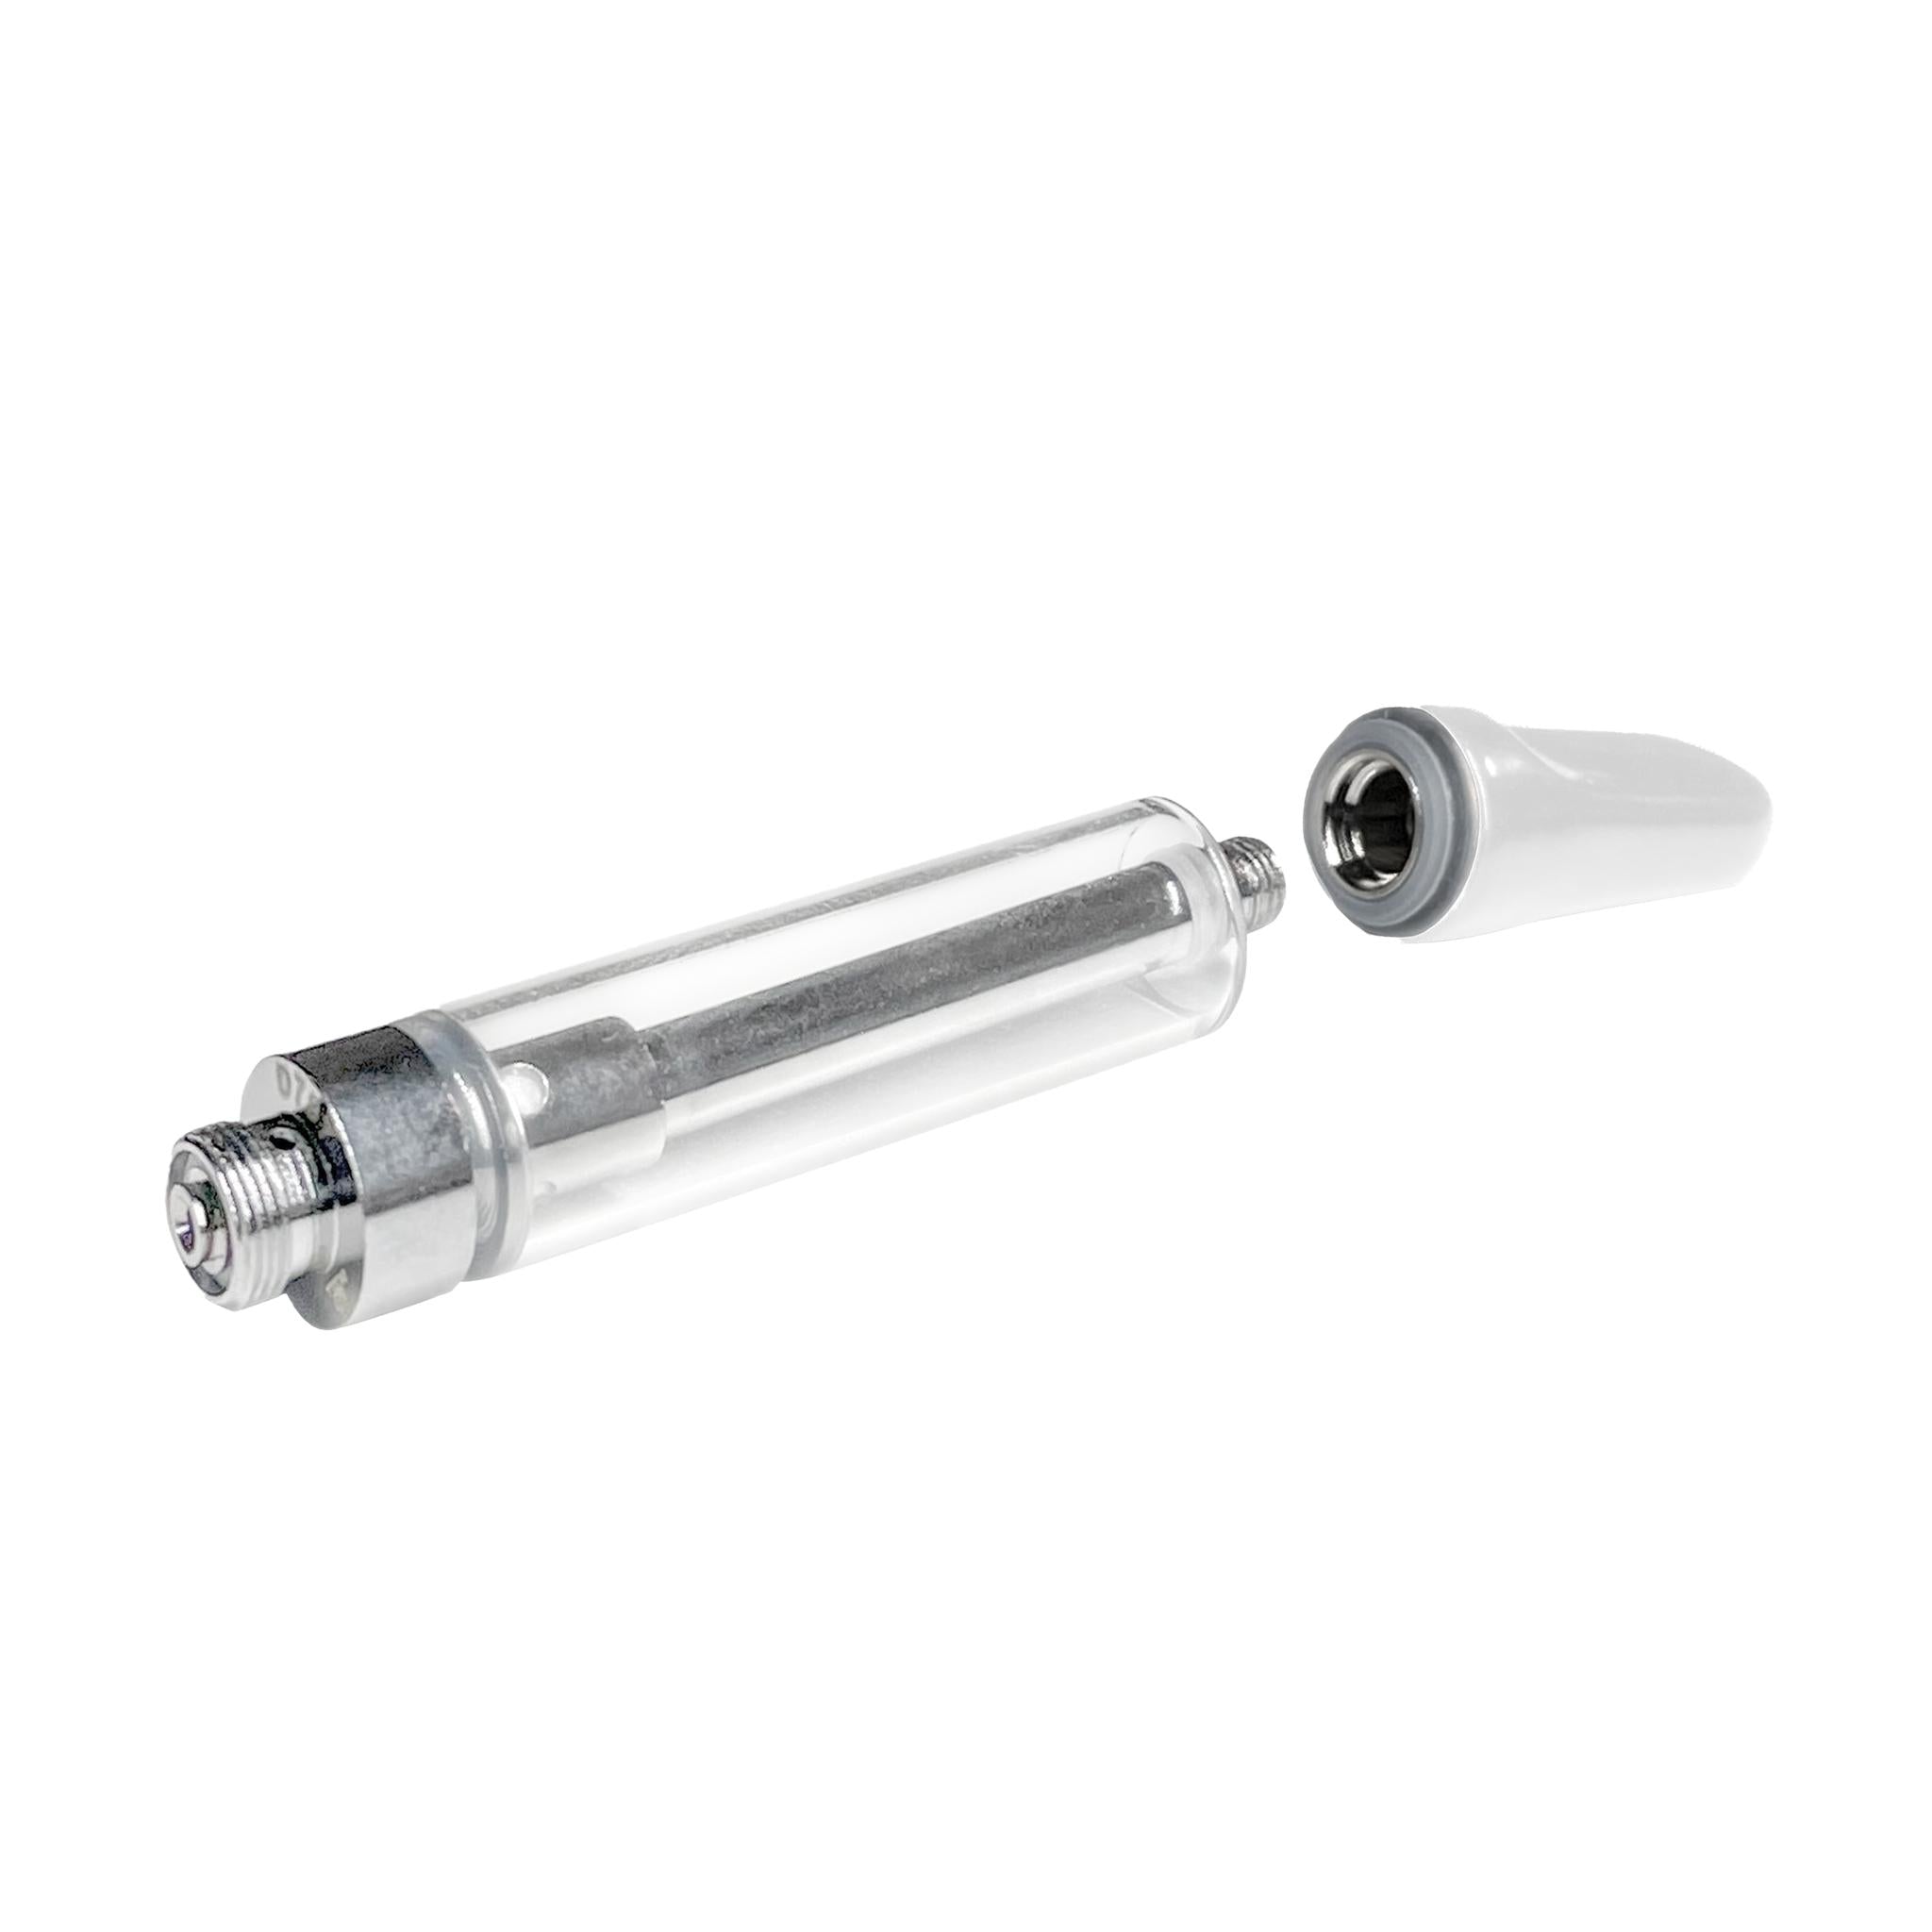 1.5mL 510 Push Top White Tip Vape Cartridge-Vape Cartridges-Vape Pens Wholesale